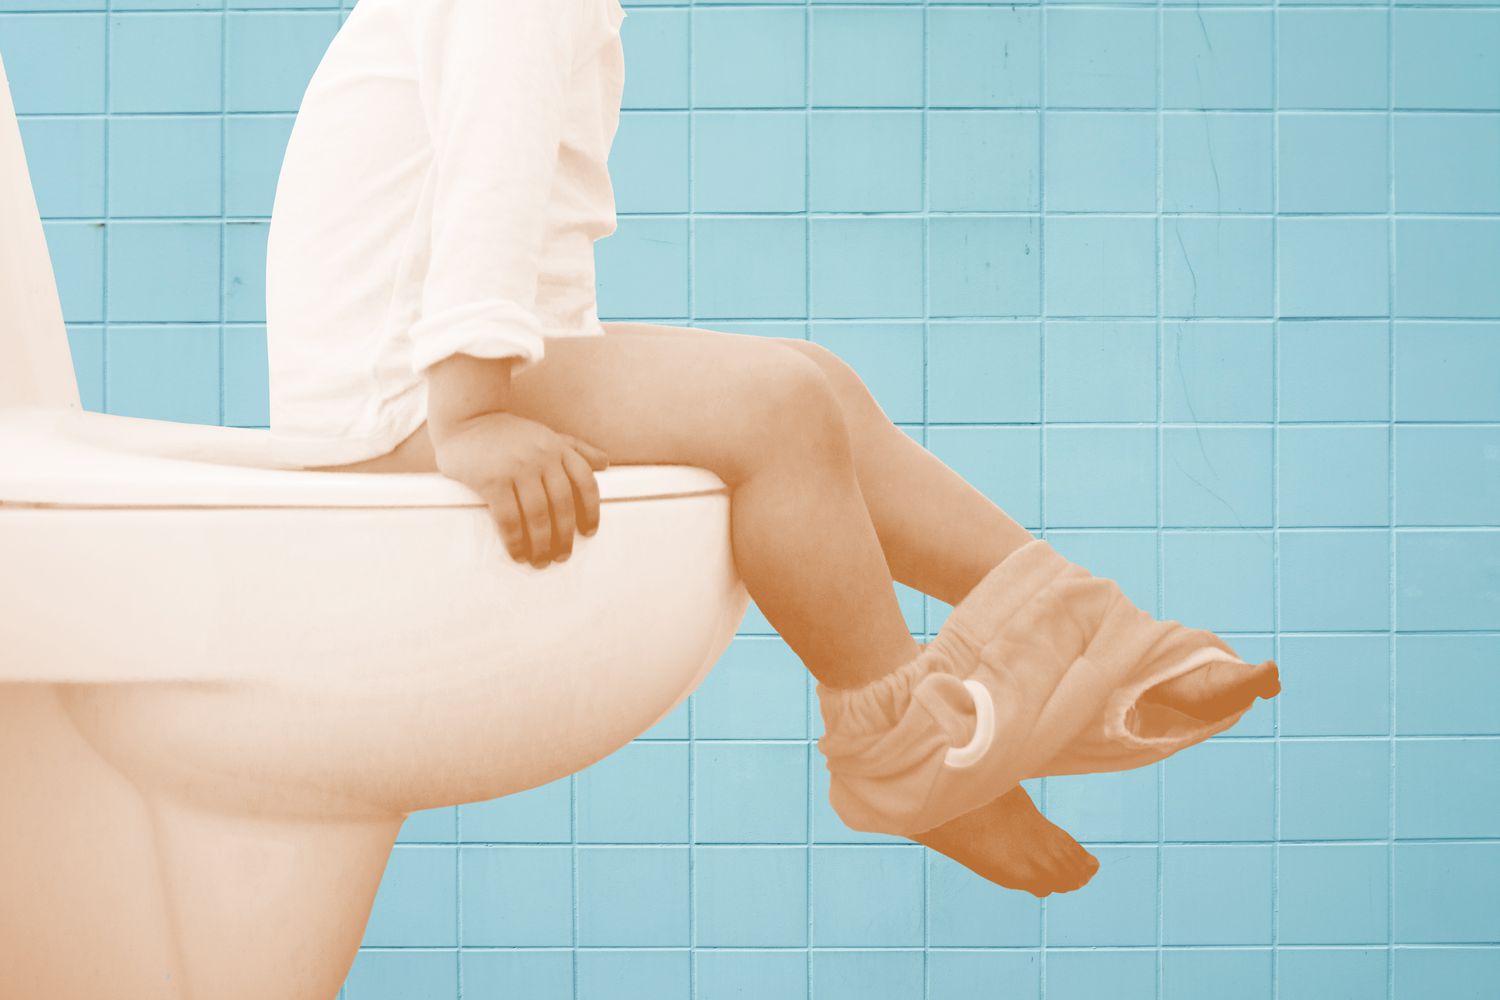 illustration of boy on toilet